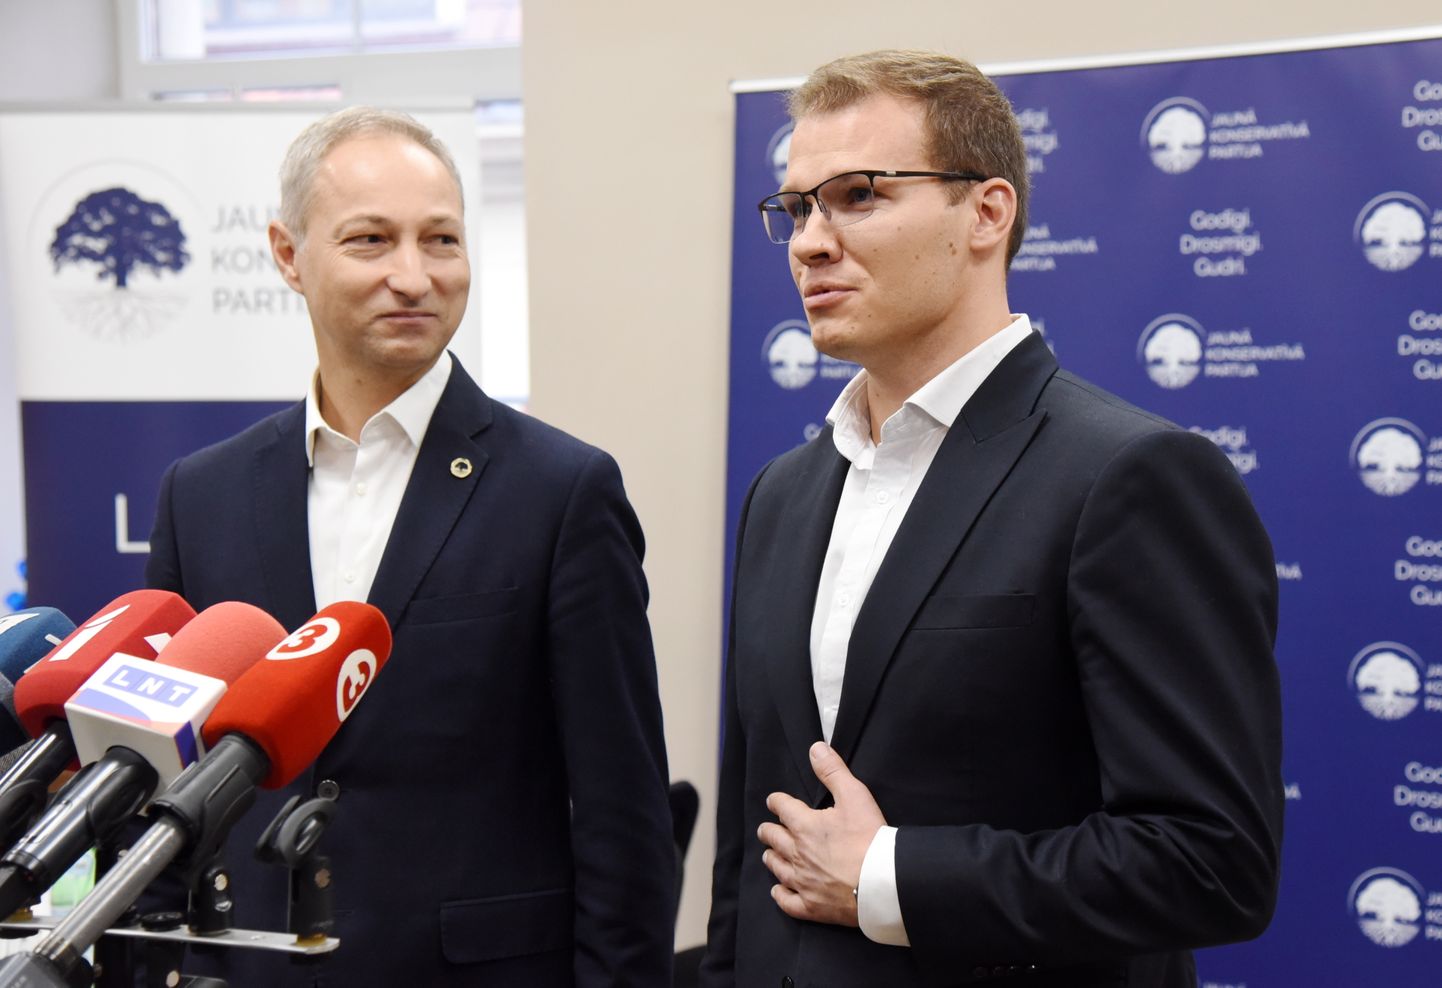 Jaunās konservatīvās partijas valdes priekšsēdētājs, premjera amata kandidāts Jānis Bordāns (no kreisās) un nacionālās apvienības "Visu Latvijai!"-"Tēvzemei un brīvībai"/LNNK priekšsēdētājs Raivis Dzintars